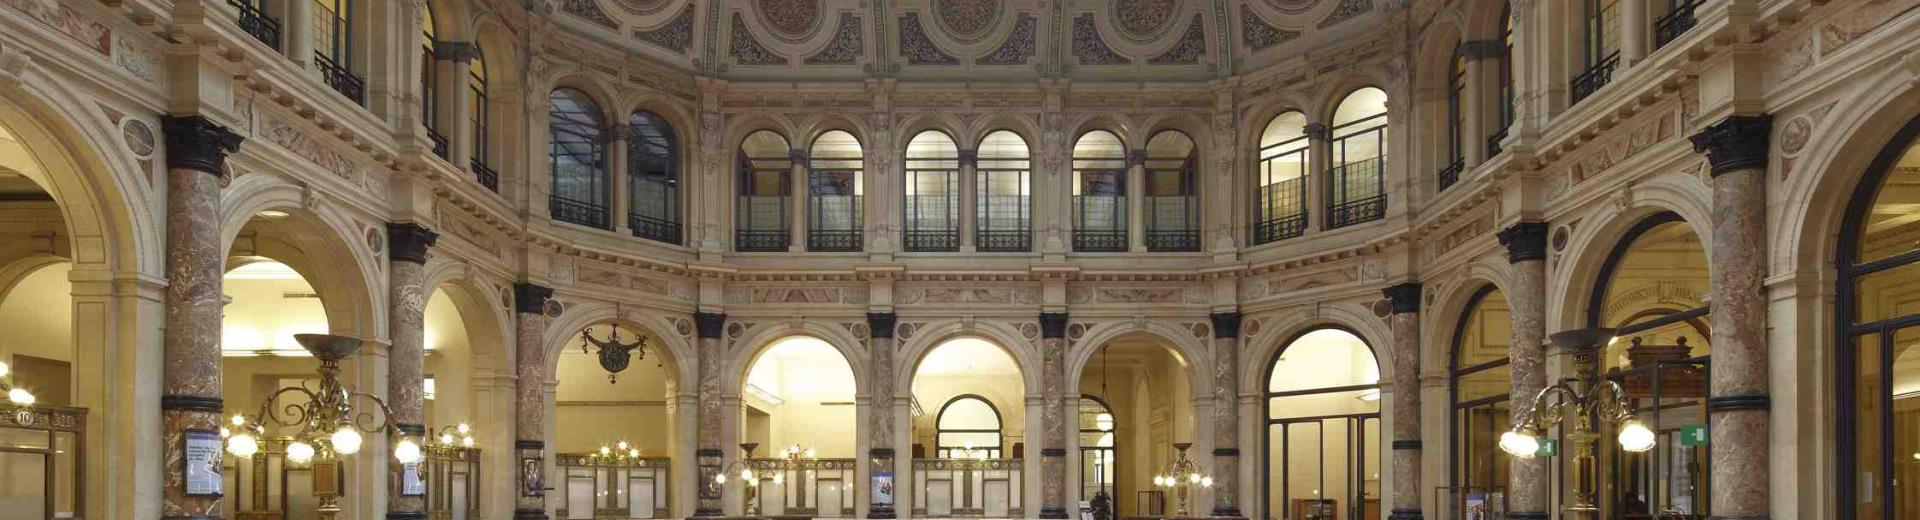 Gallerie d'Italia - Piazza della Scala a Milano